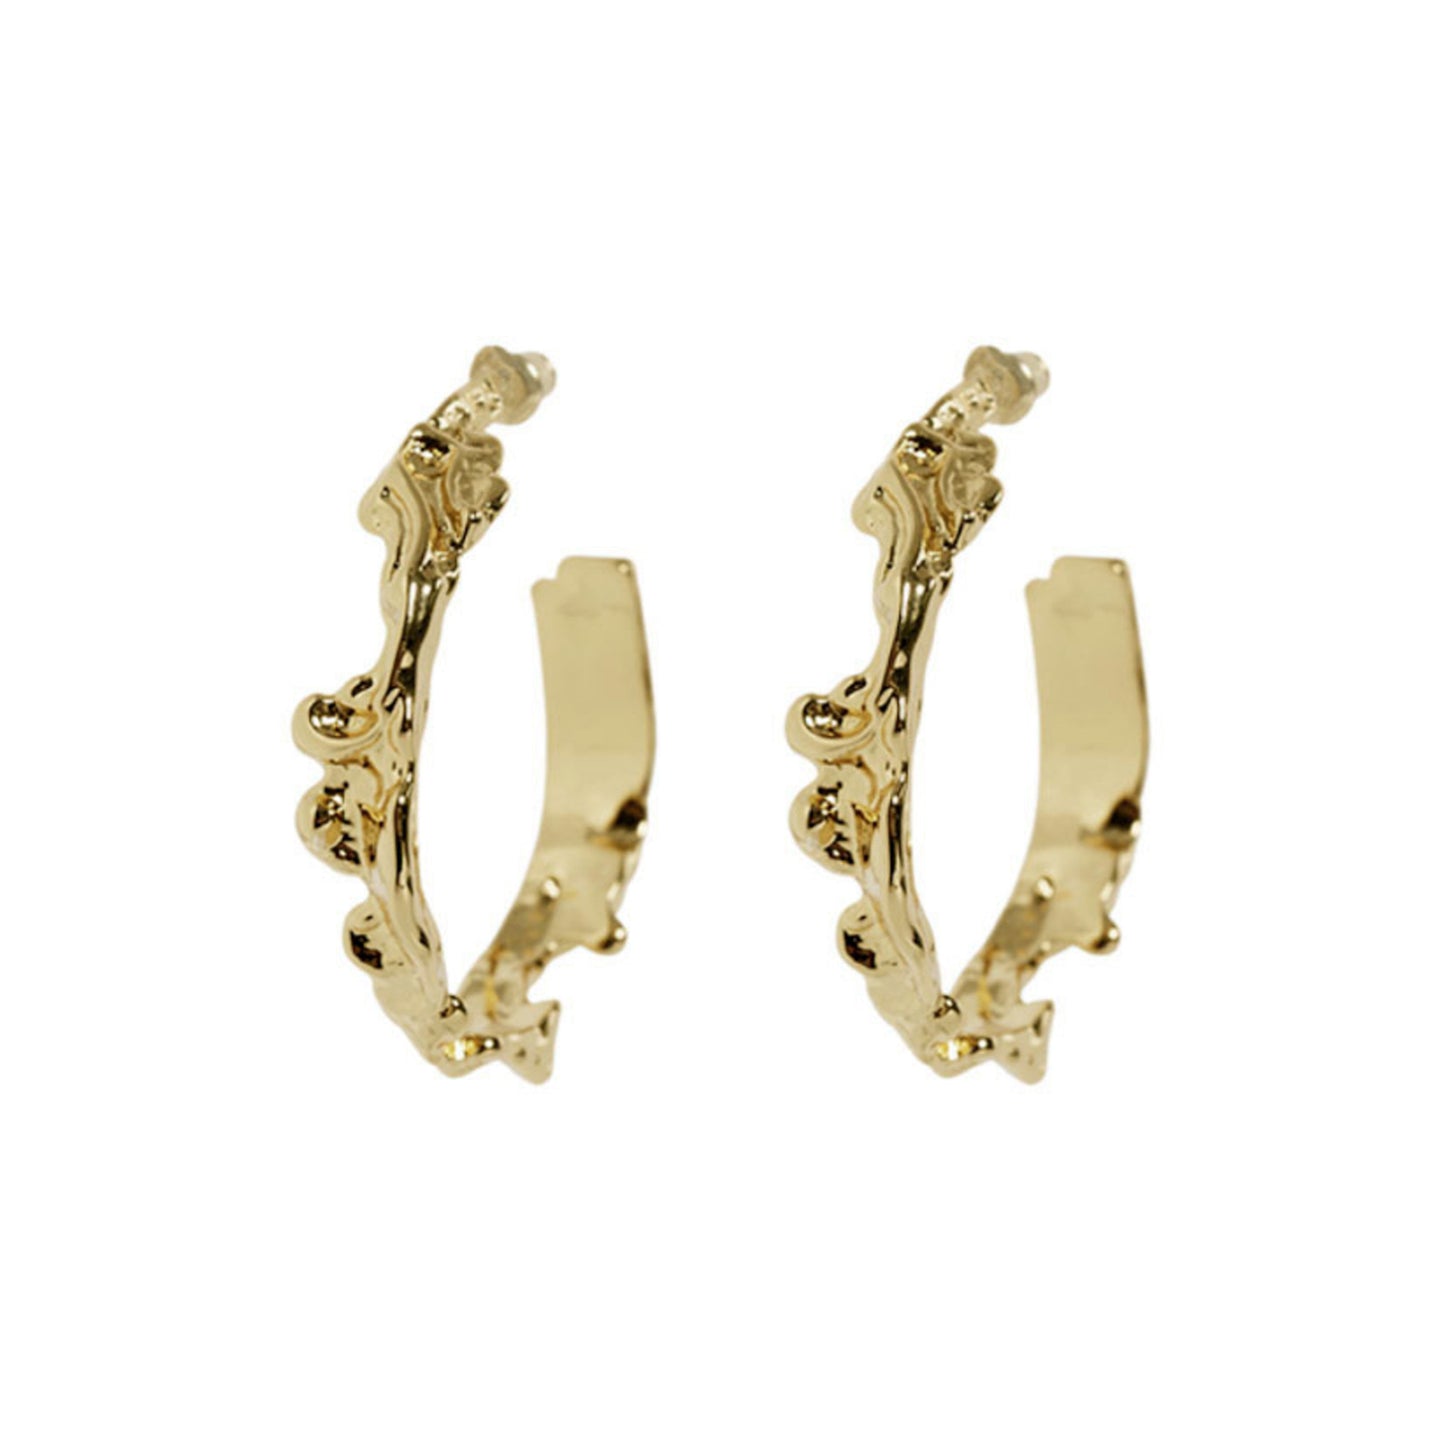 Lava earrings 5528